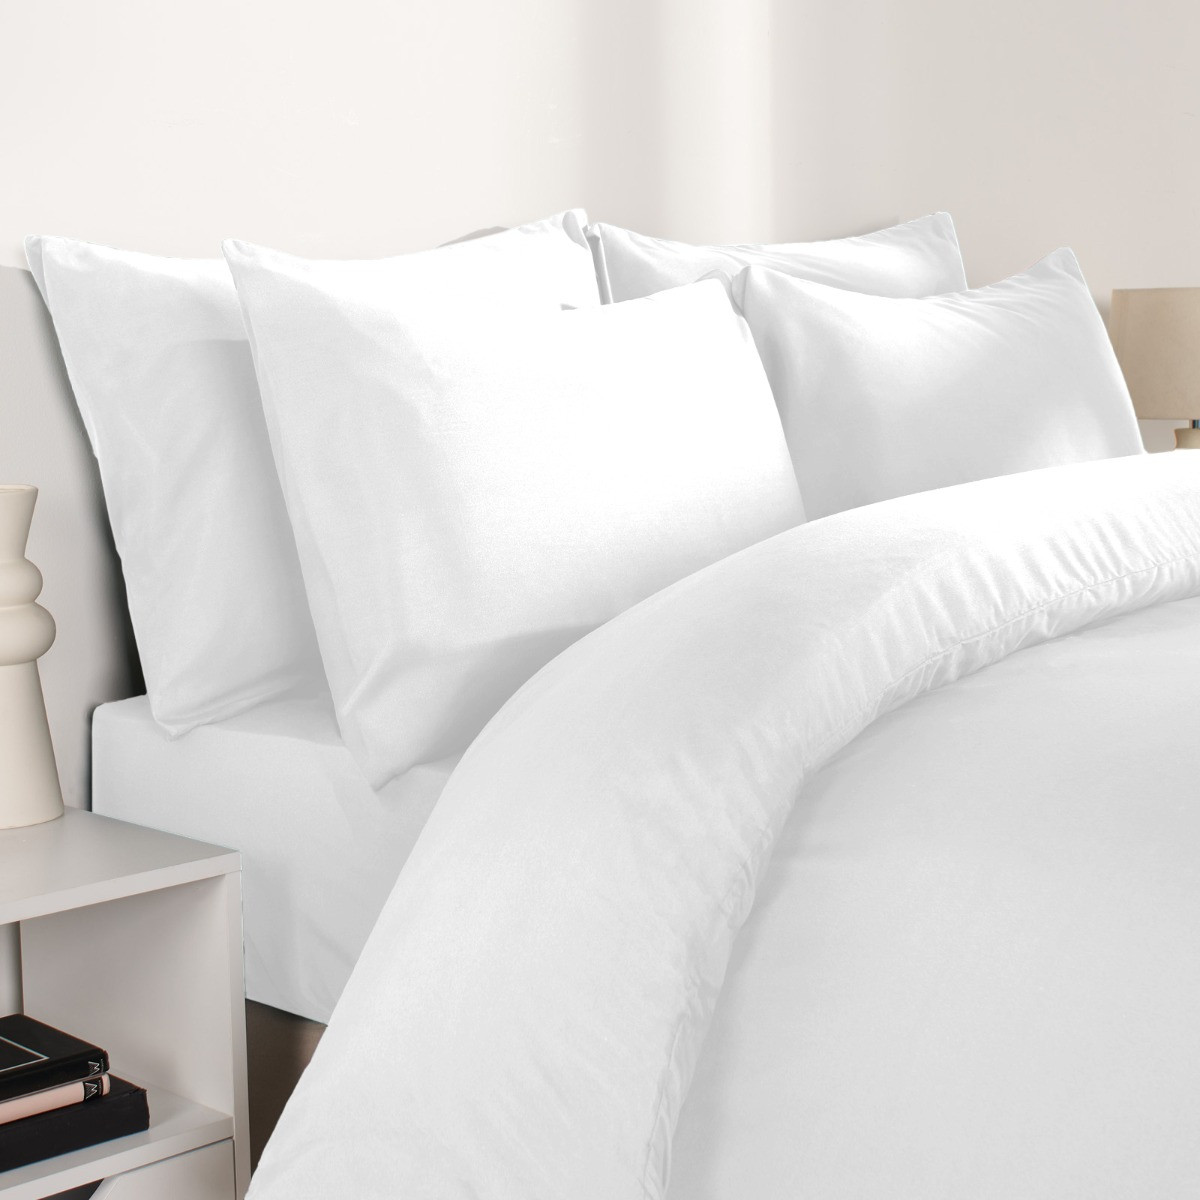 Brentfords Plain Duvet Single Cover with Pillowcases - White>